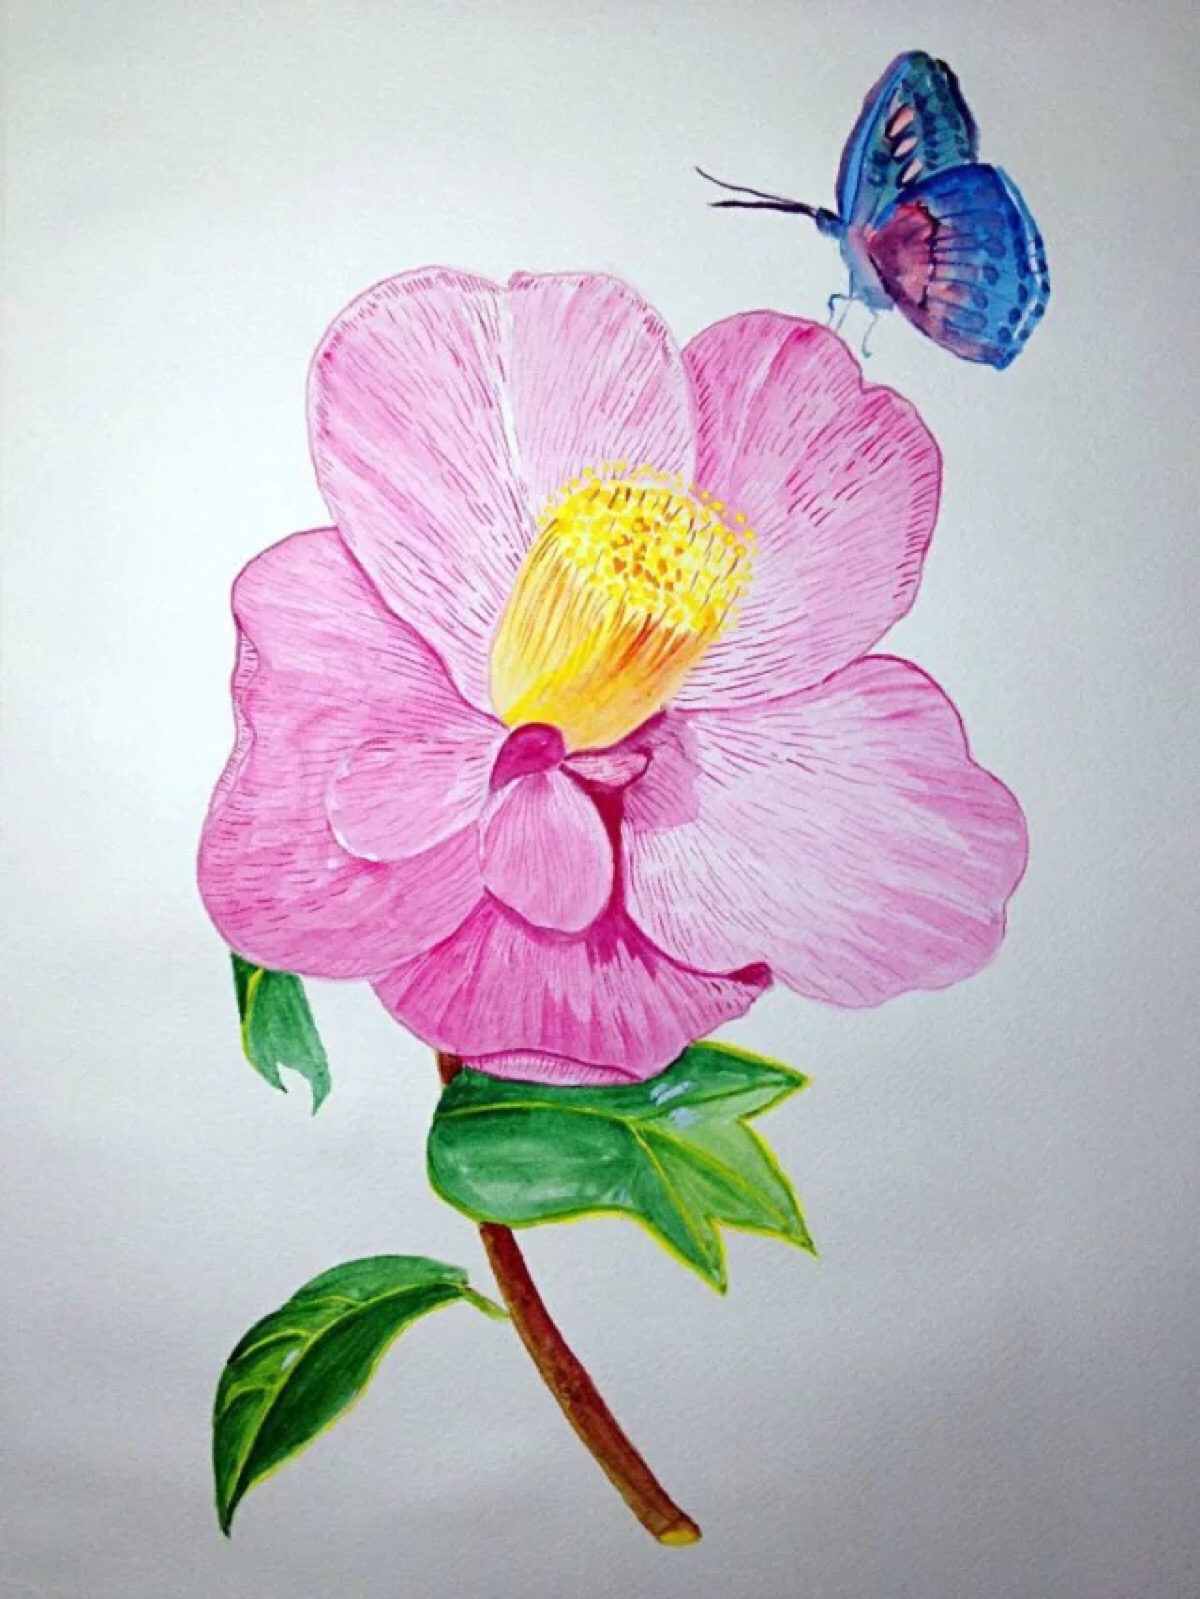 《山茶花与蝶》 自学水彩画,这一幅给我极大的鼓励